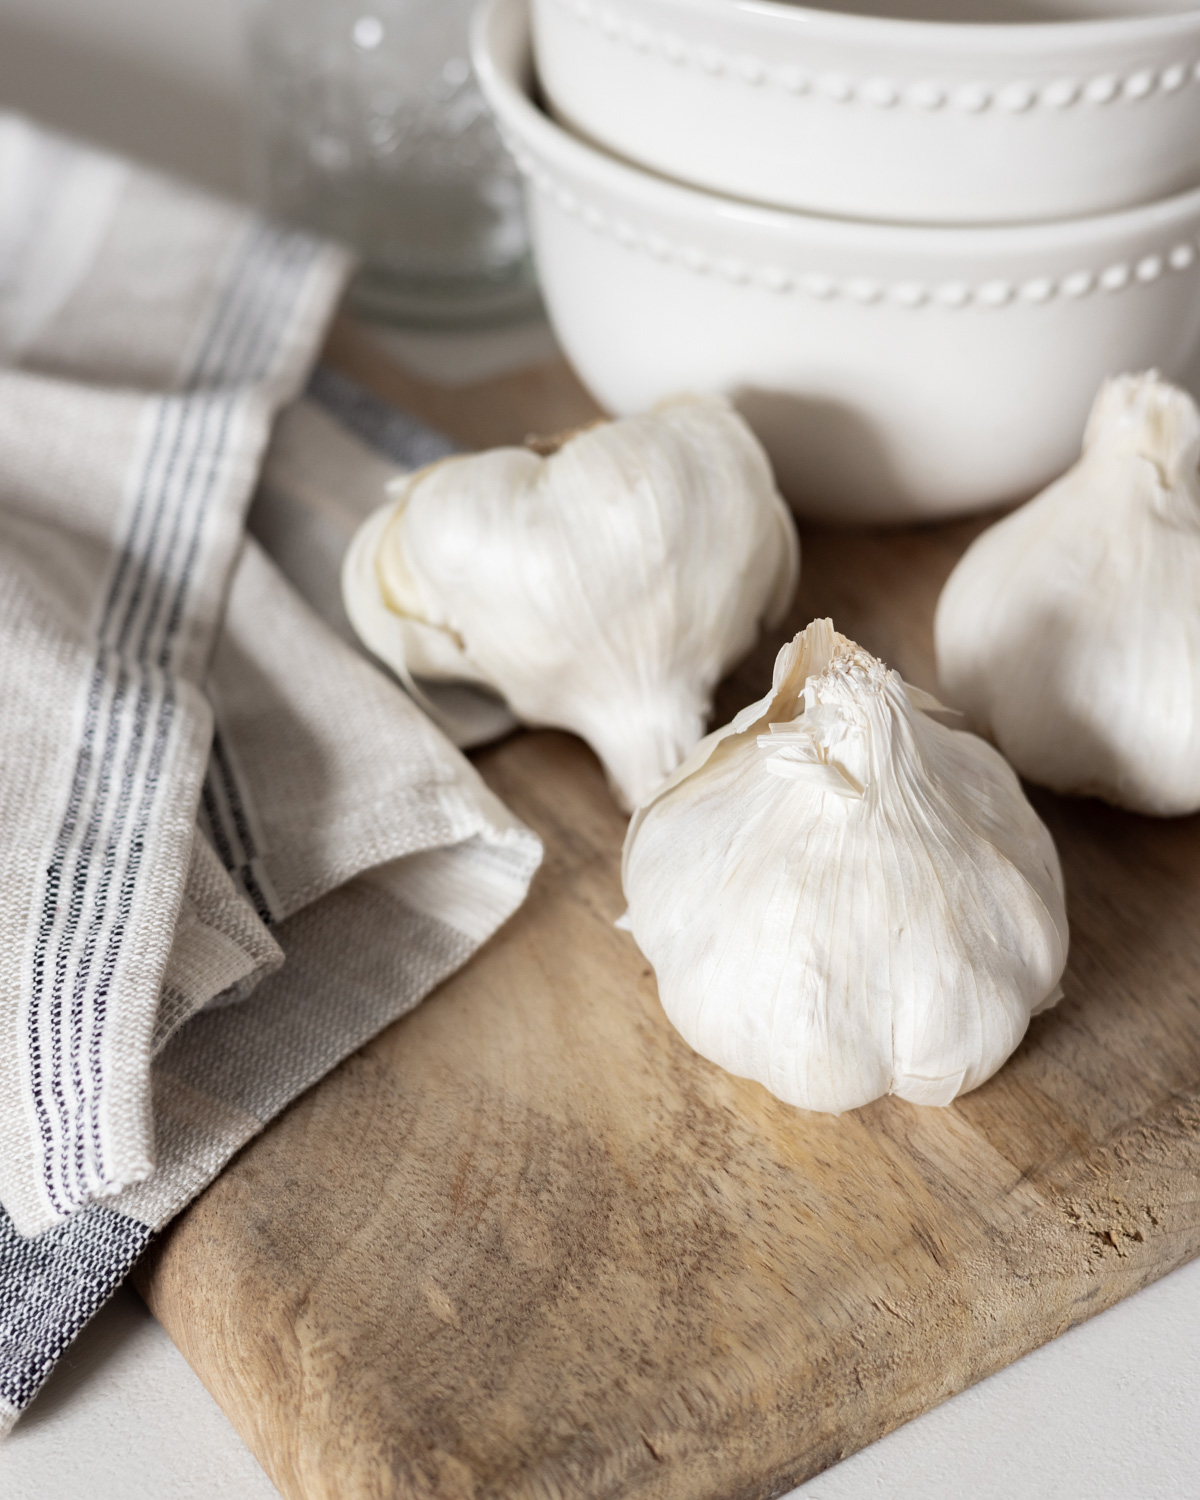 Heads of garlic on a cutting board.